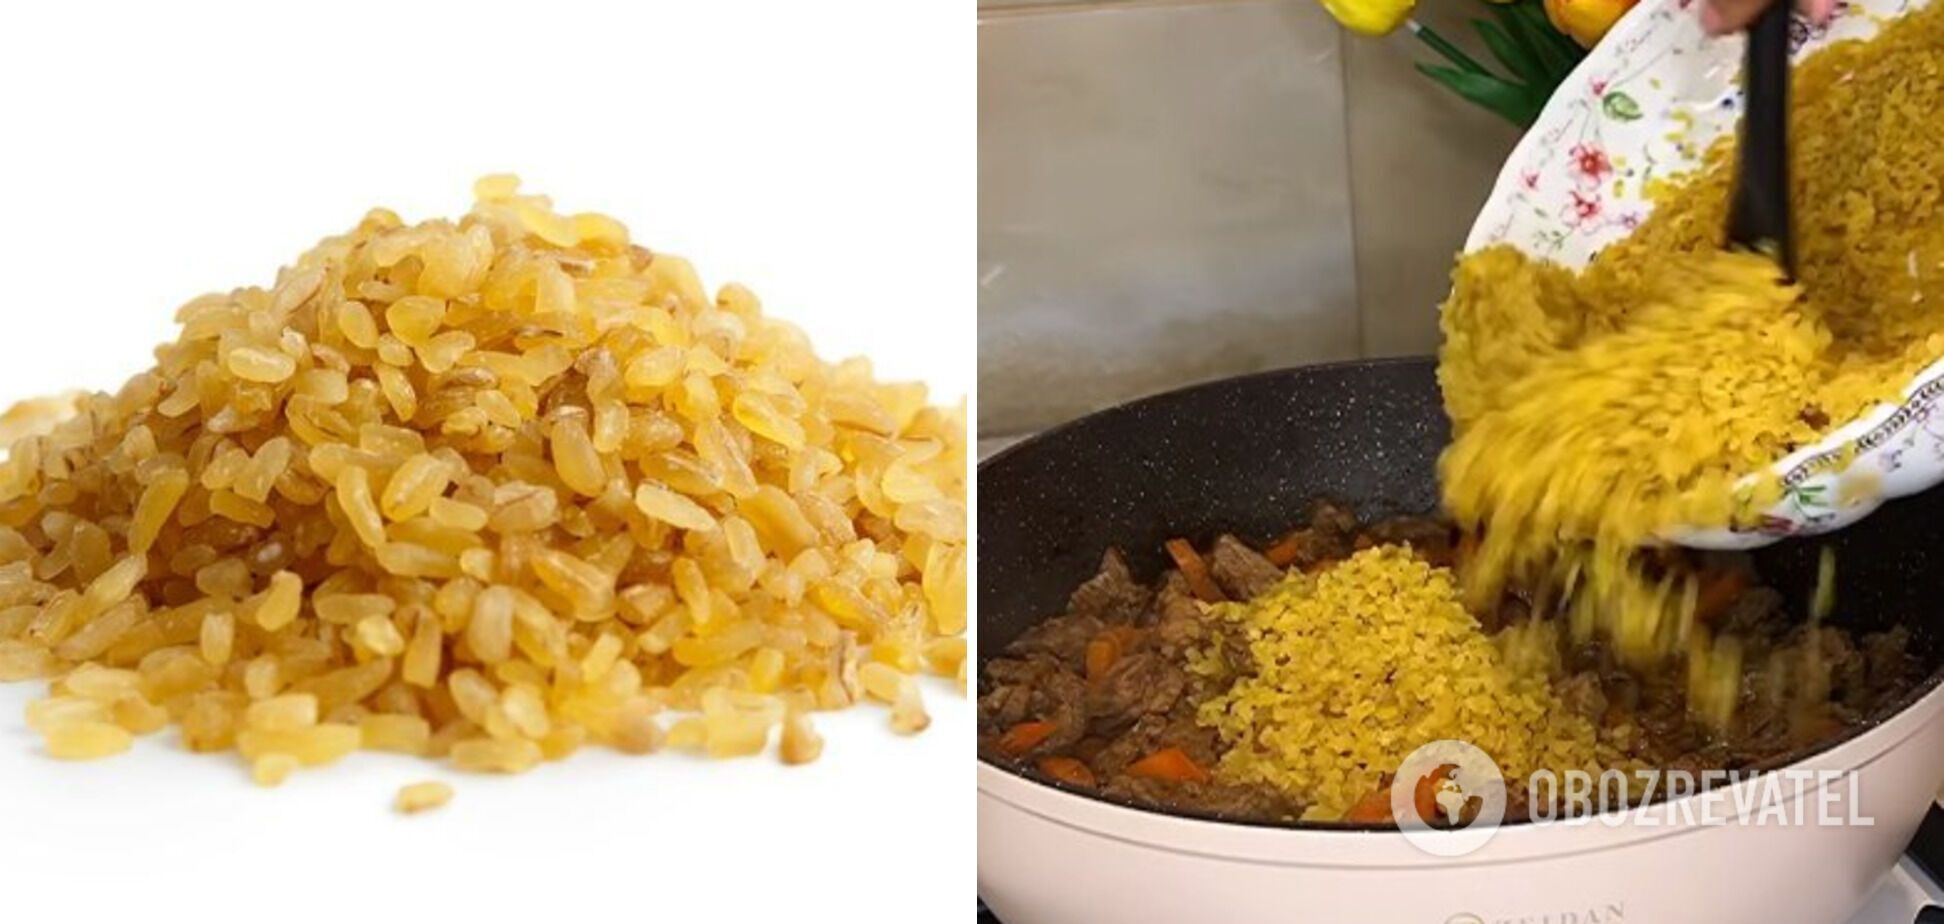 Як правильно варити рис, щоб не зіпсувати його